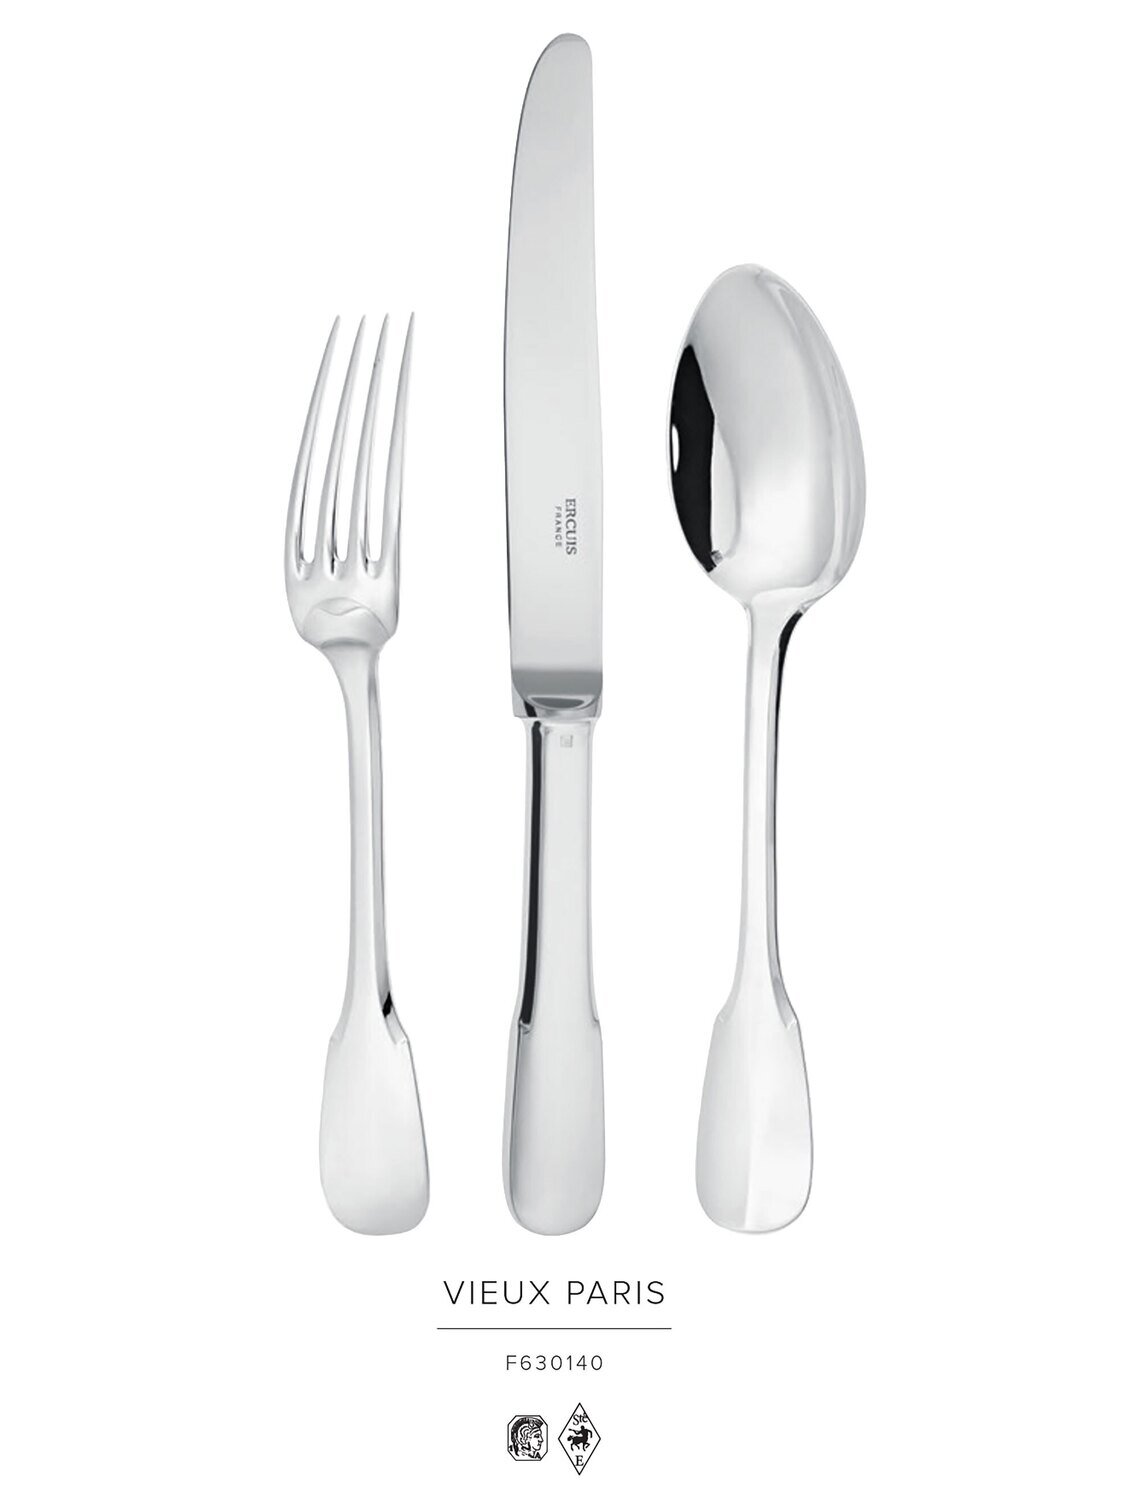 Ercuis Vieux Paris Place Spoon Sterling Silver F630140-91